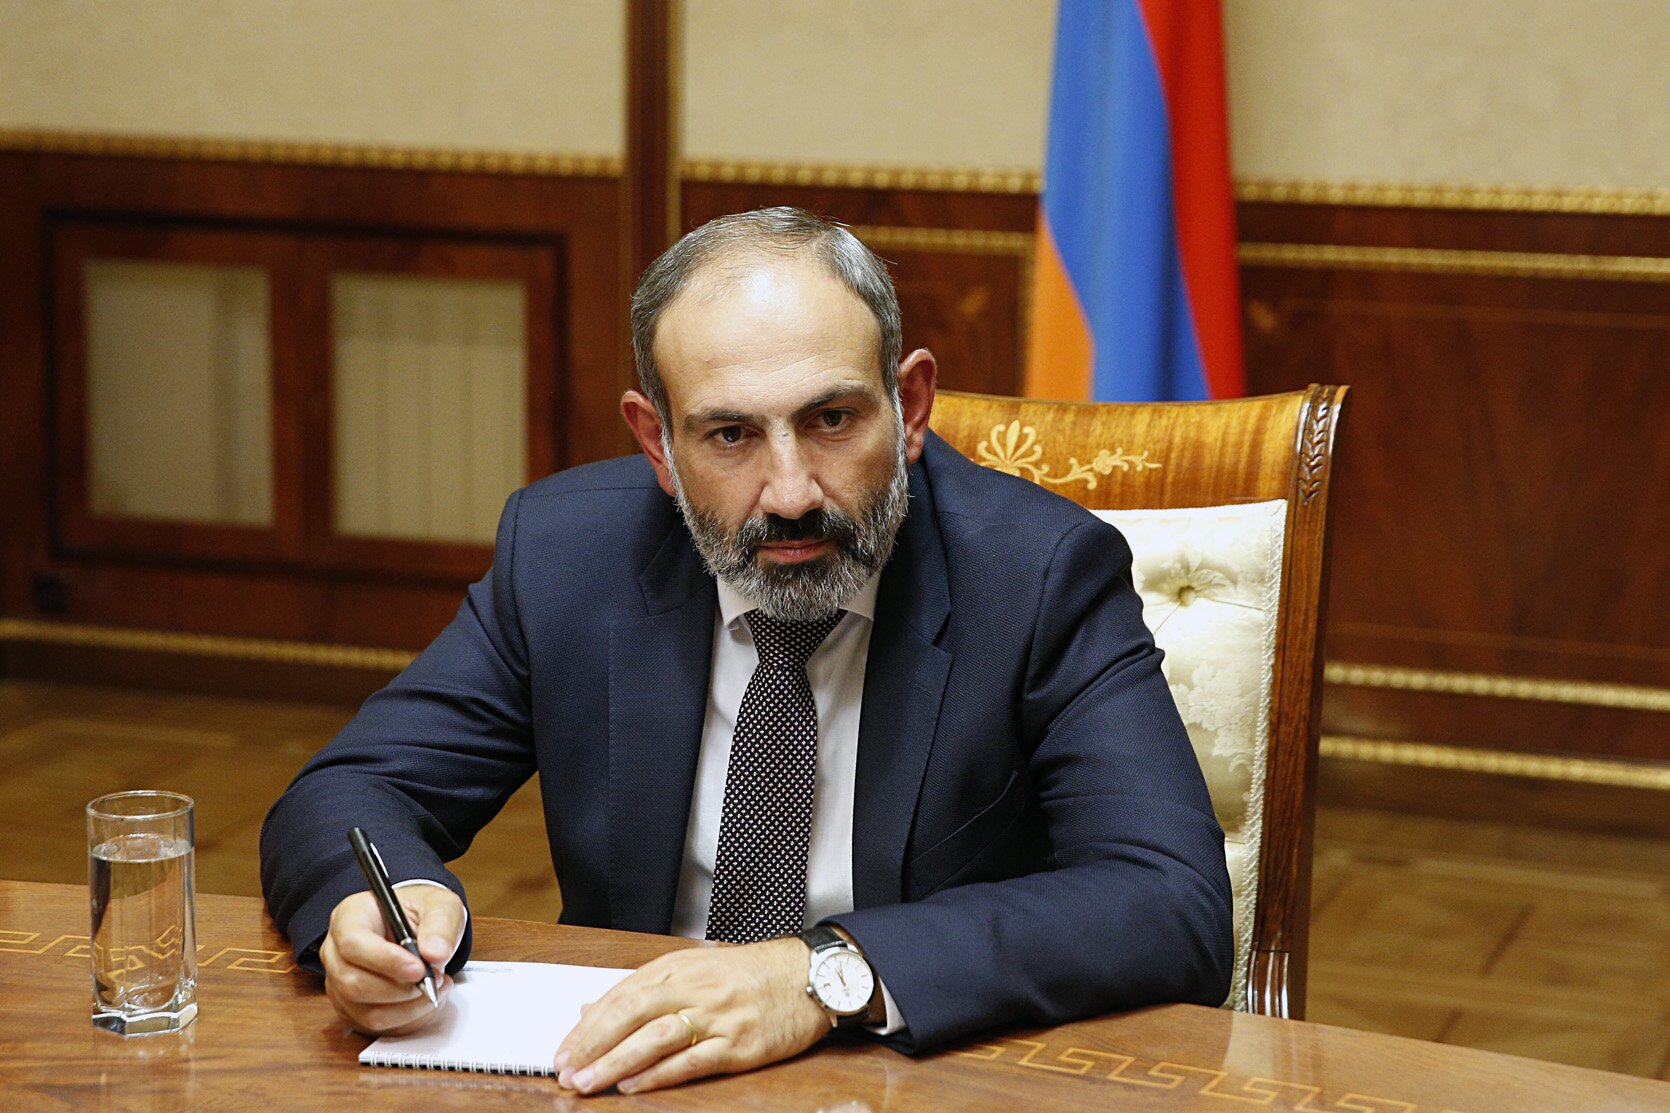 Пашинян раскрыл коварный план противников и анонсировал изменение конституции Армении 